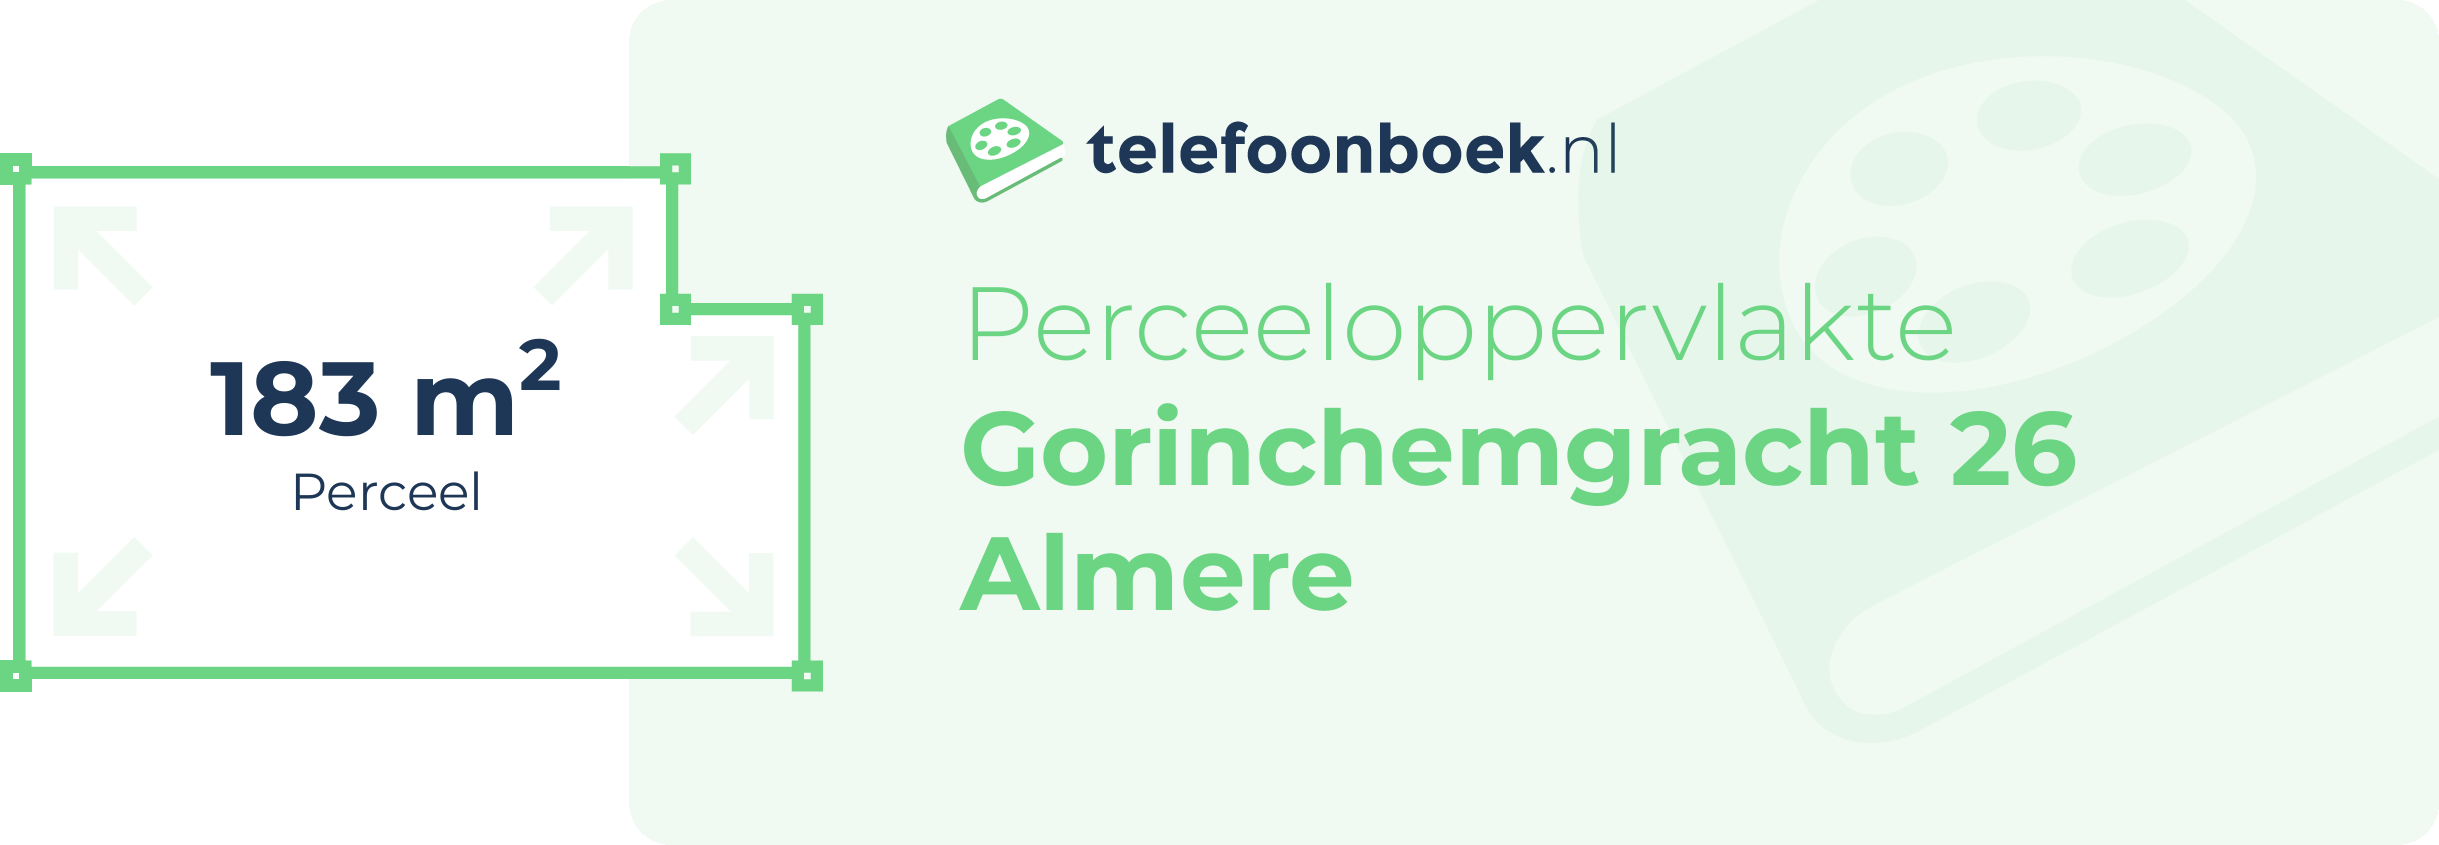 Perceeloppervlakte Gorinchemgracht 26 Almere